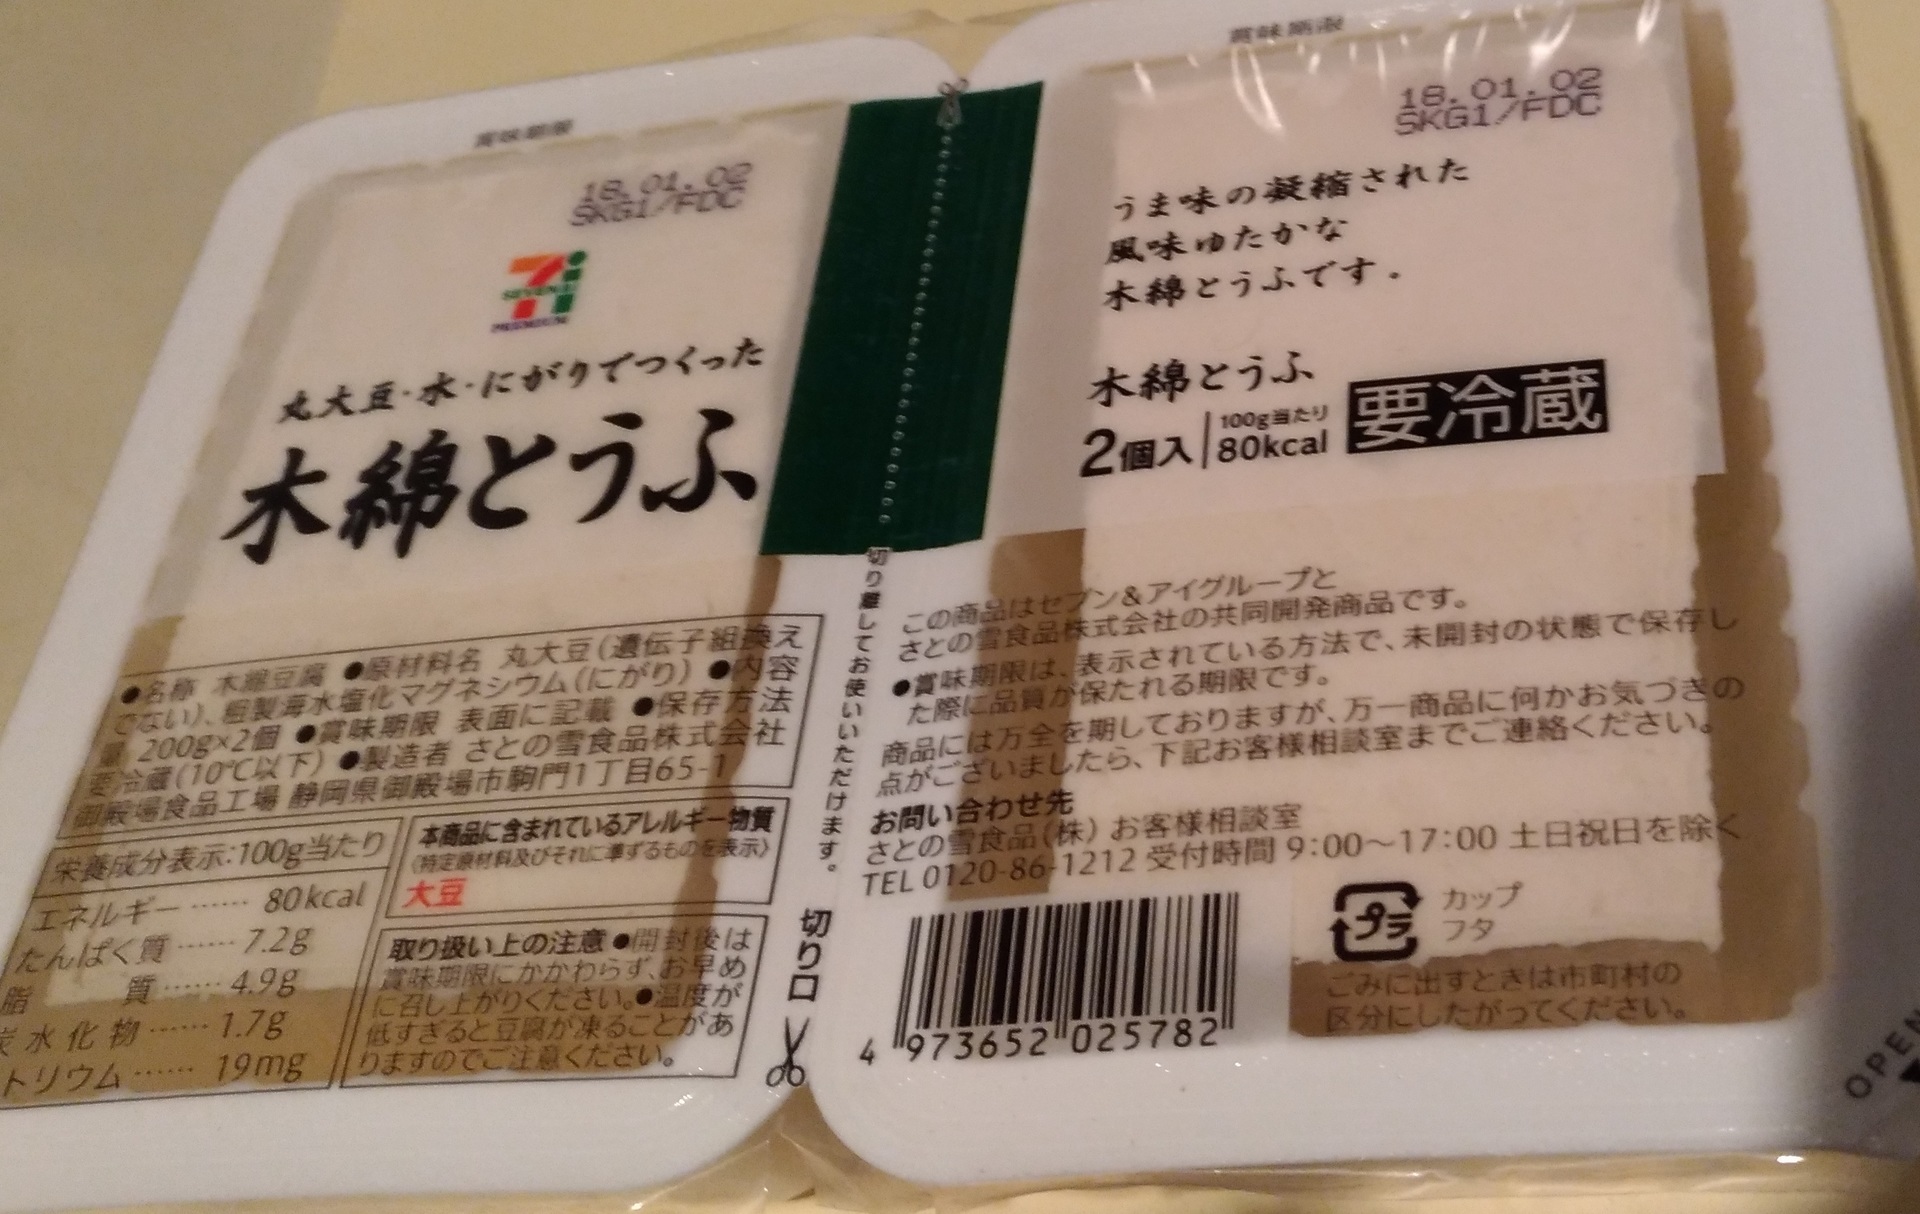 木綿とうふ セブンイレブン 7プレミアム 豆腐パッケージは セブンイレブン 大阪おにぎり100円セールブログ新作メニュー